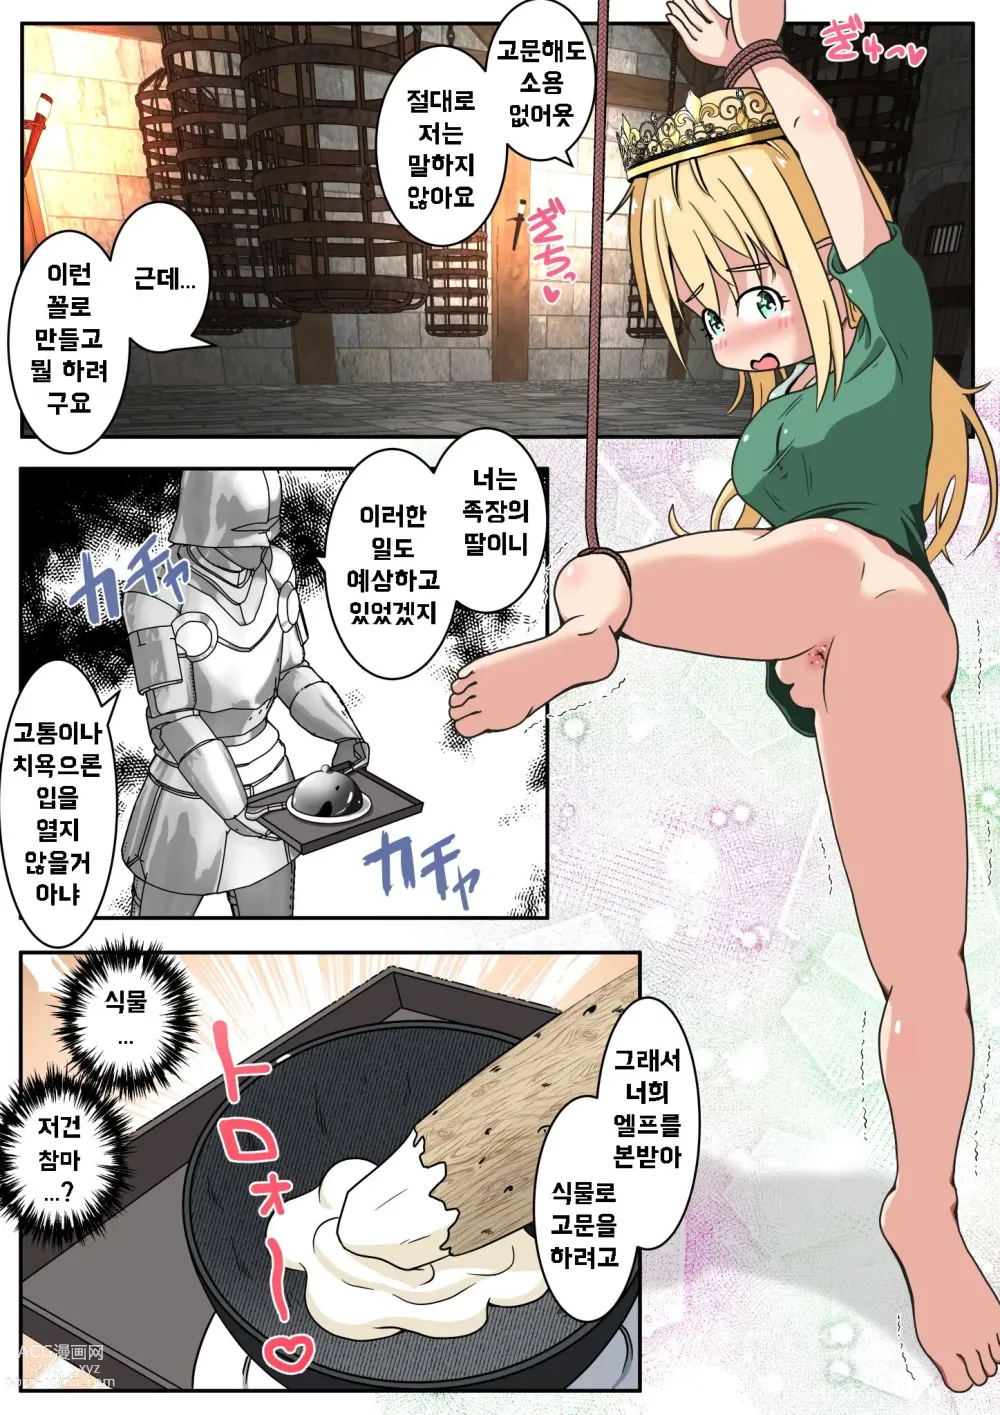 Page 2 of doujinshi 엘프 아가씨의 엉덩이 구멍에 참마를 넣어주는 이야기